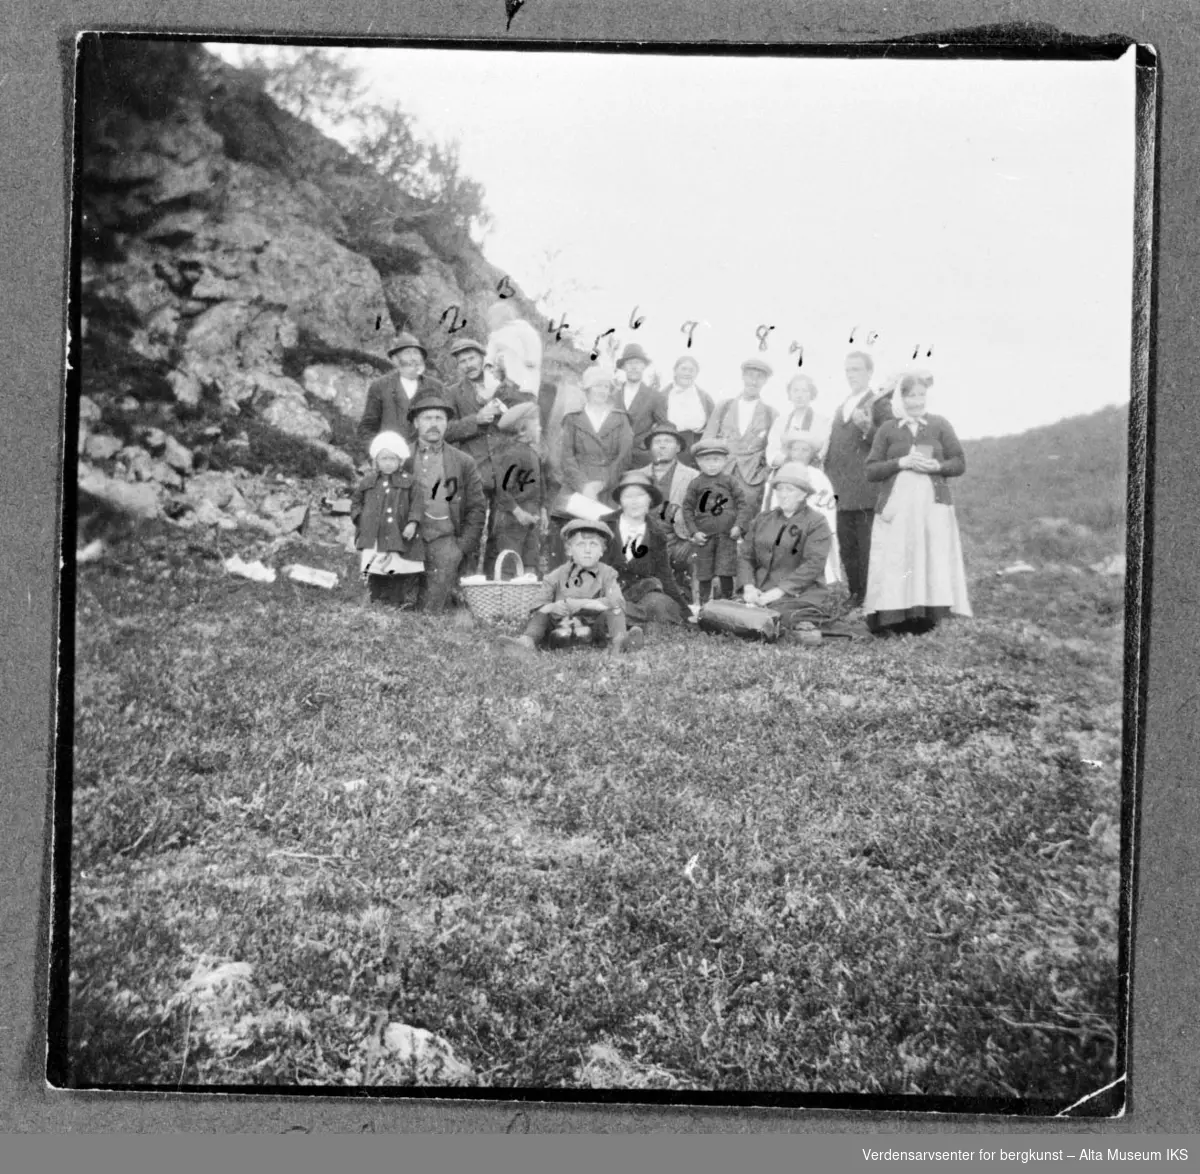 20 personer deltar på sankthansfeiring ved Kjerringvannet i Kviby 1922, på bildet ser vi flere voksne og barn med en nistekurv og fjell i bakgrunn. En mann til høyre ser ut til og holde en gitar.